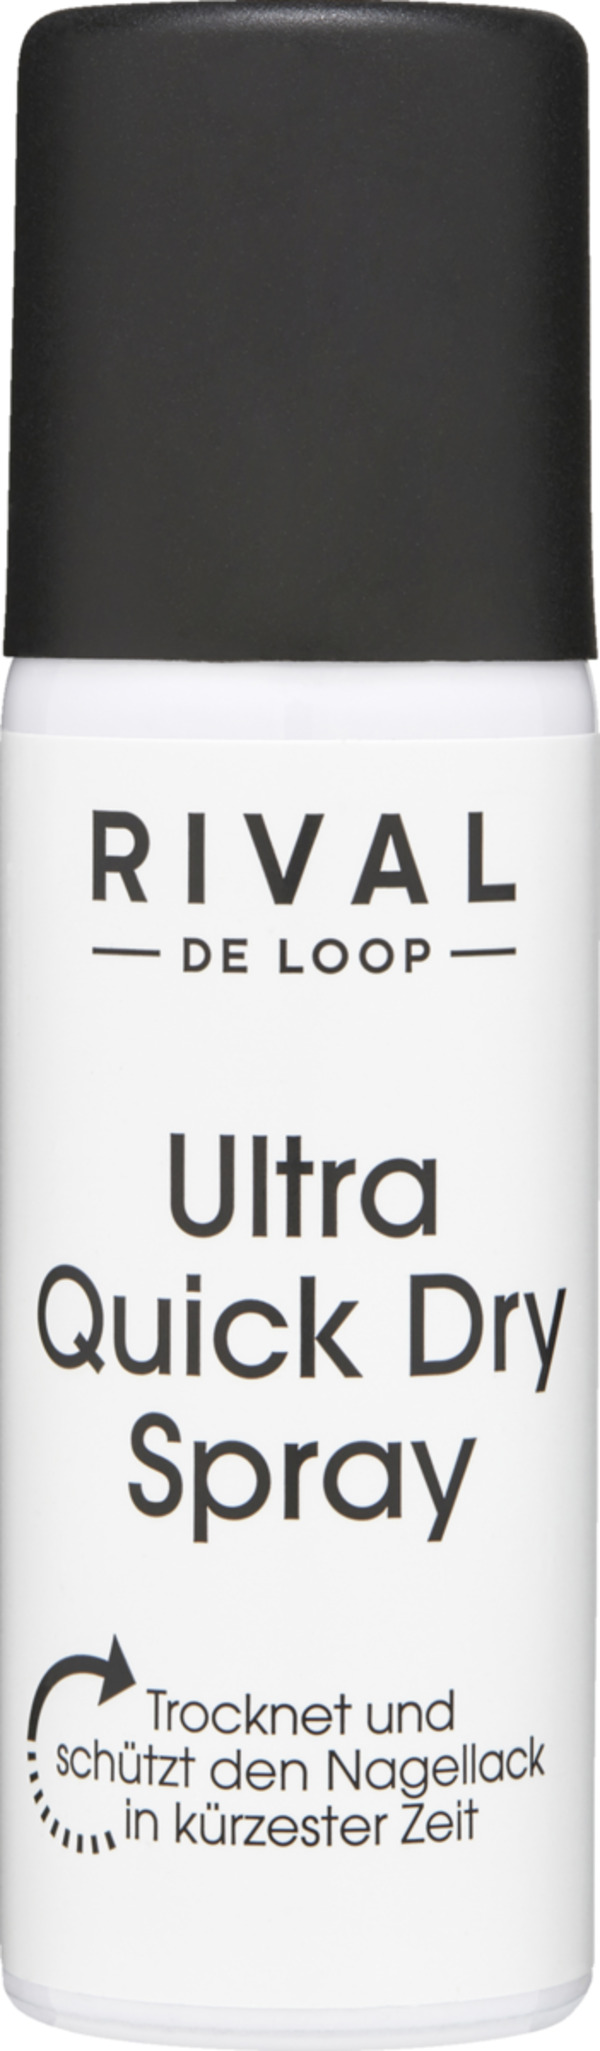 Bild 1 von RIVAL DE LOOP Ultra Quick Dry Spray